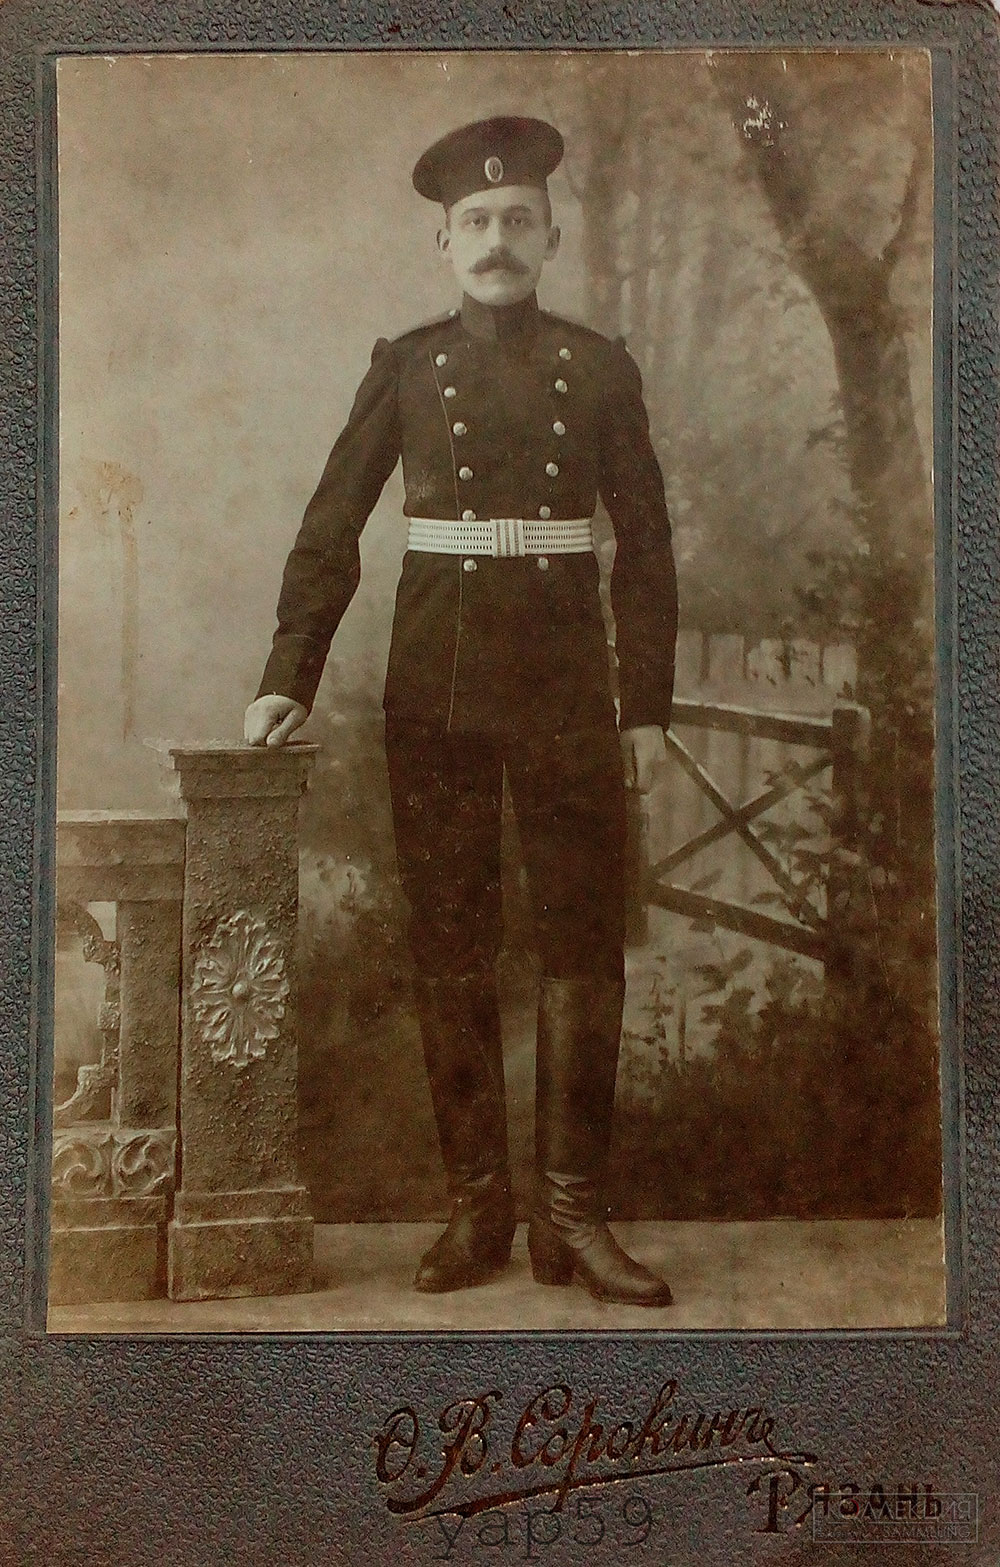 Нижний чин одной из частей Рязанского гарнизона, фото сделано 11.11.1912 года. (коллекция Юрия Парамонова)